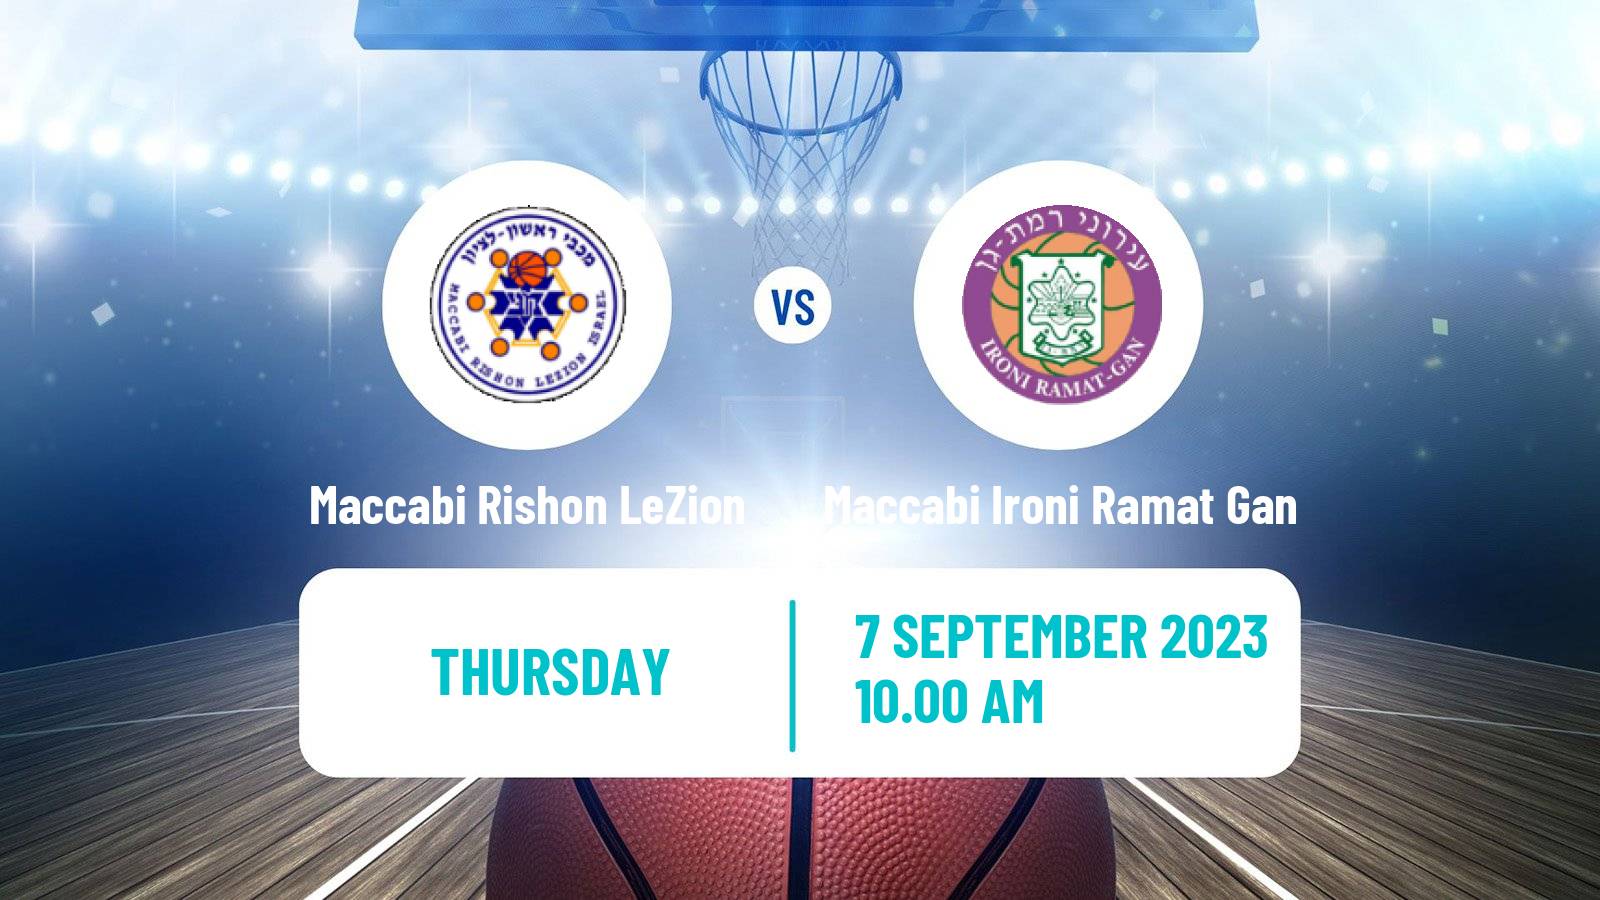 Basketball Club Friendly Basketball Maccabi Rishon LeZion - Maccabi Ironi Ramat Gan